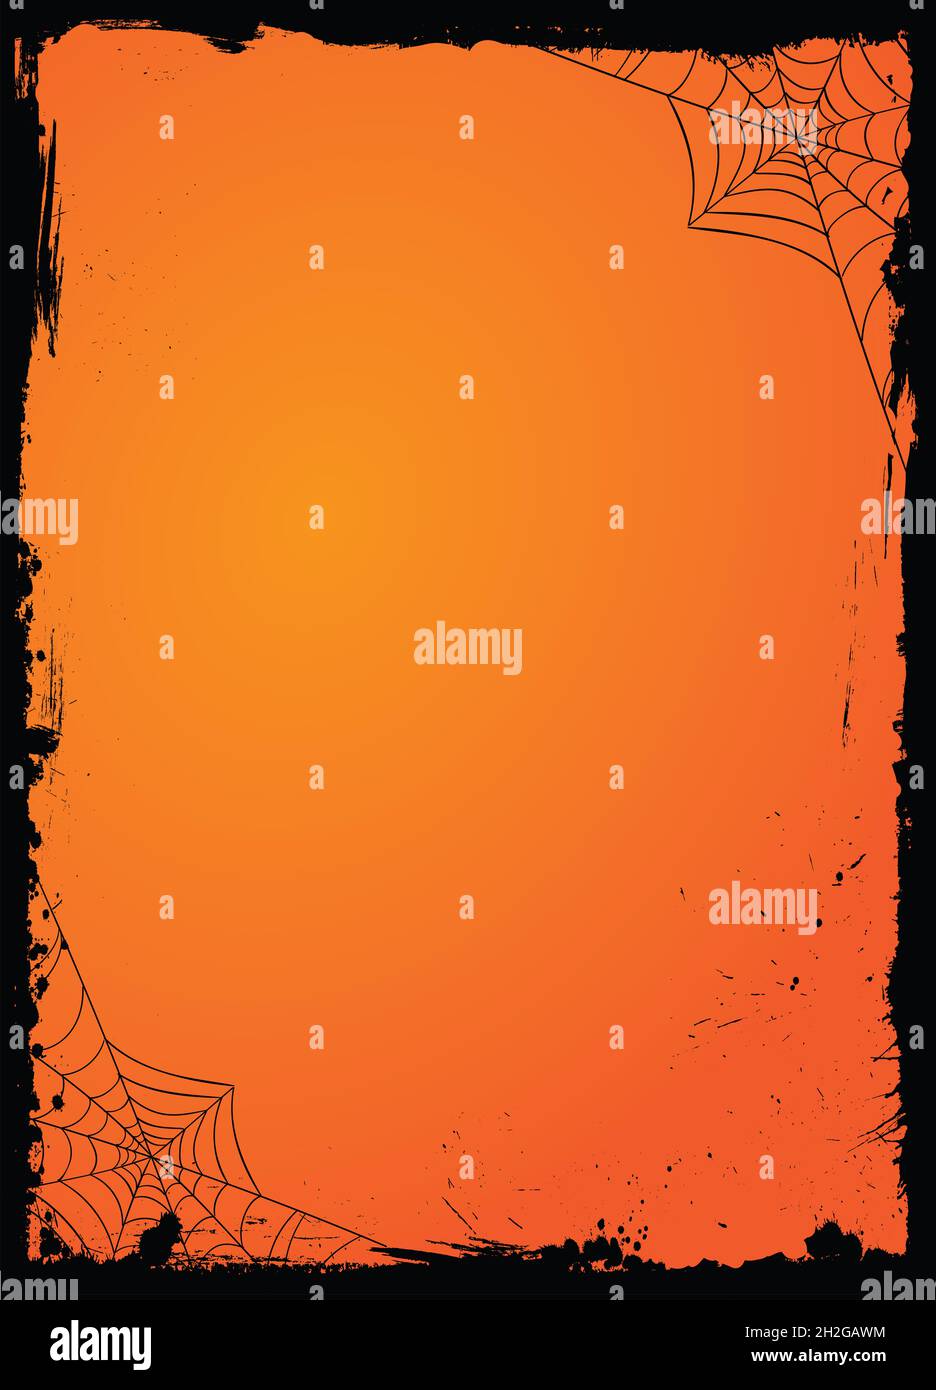 Le modèle de fond de bannière orange d'Halloween à dégradé horizontal avec bordure de grunge noire et toile d'araignée Banque D'Images